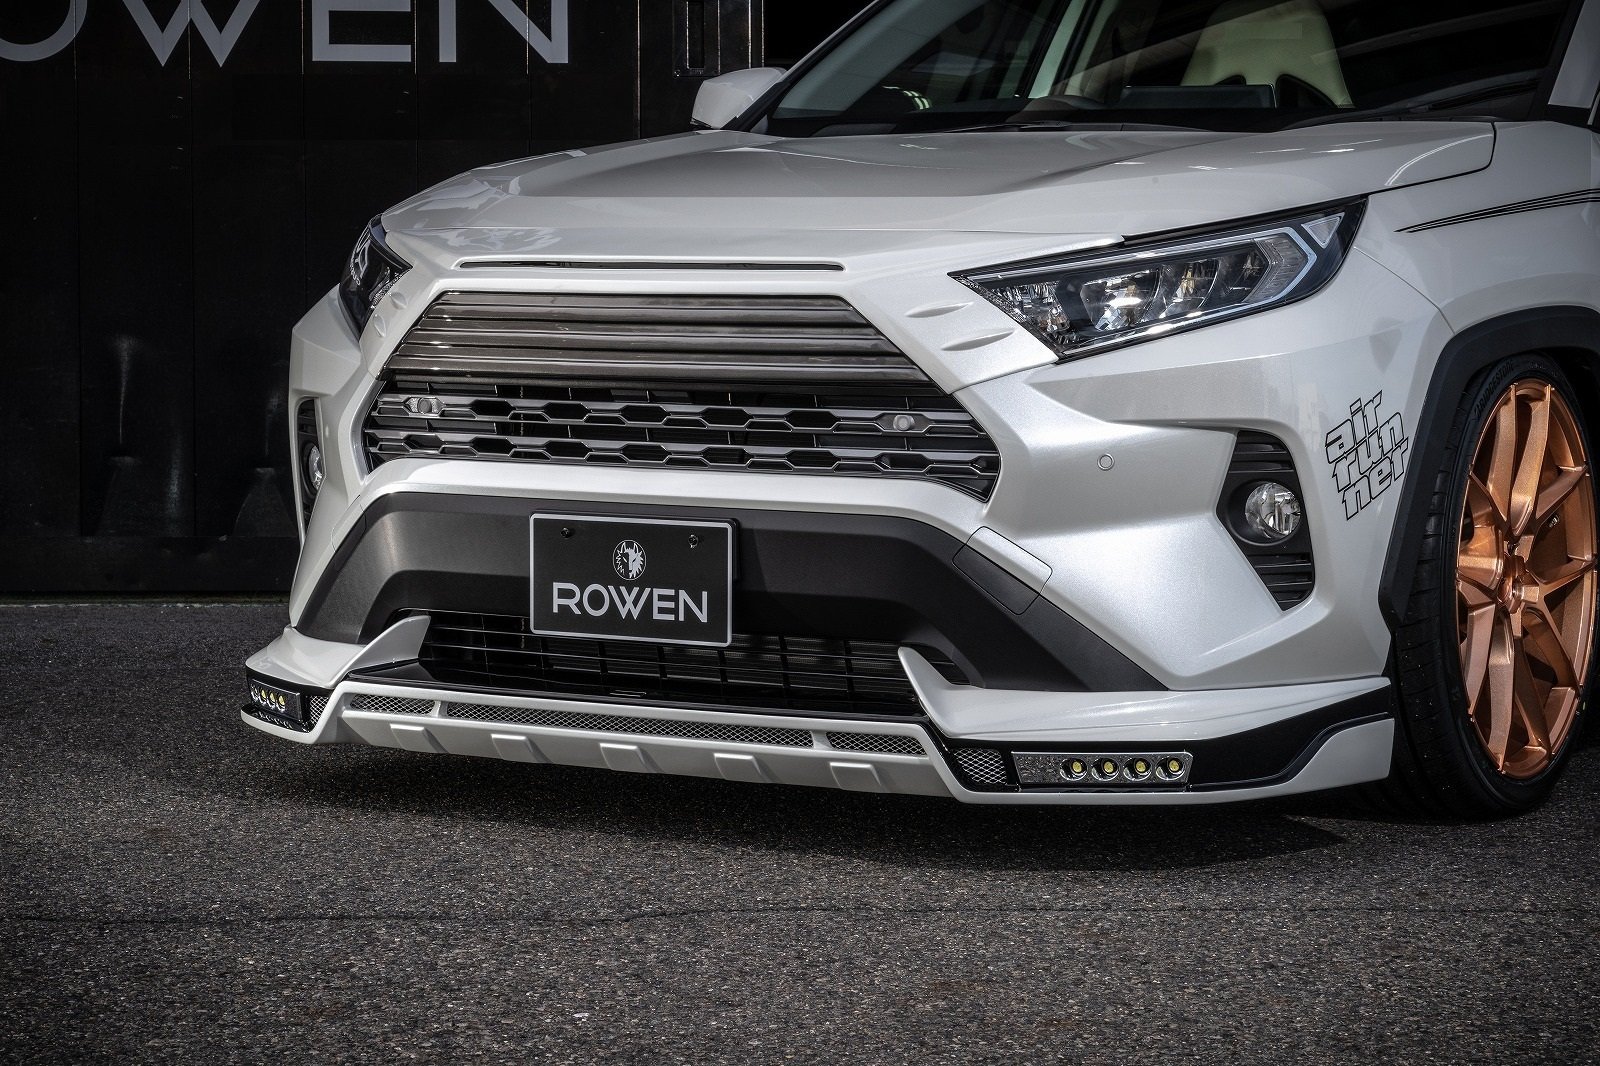 Rowen body kit for Toyota RAV 4 carbon